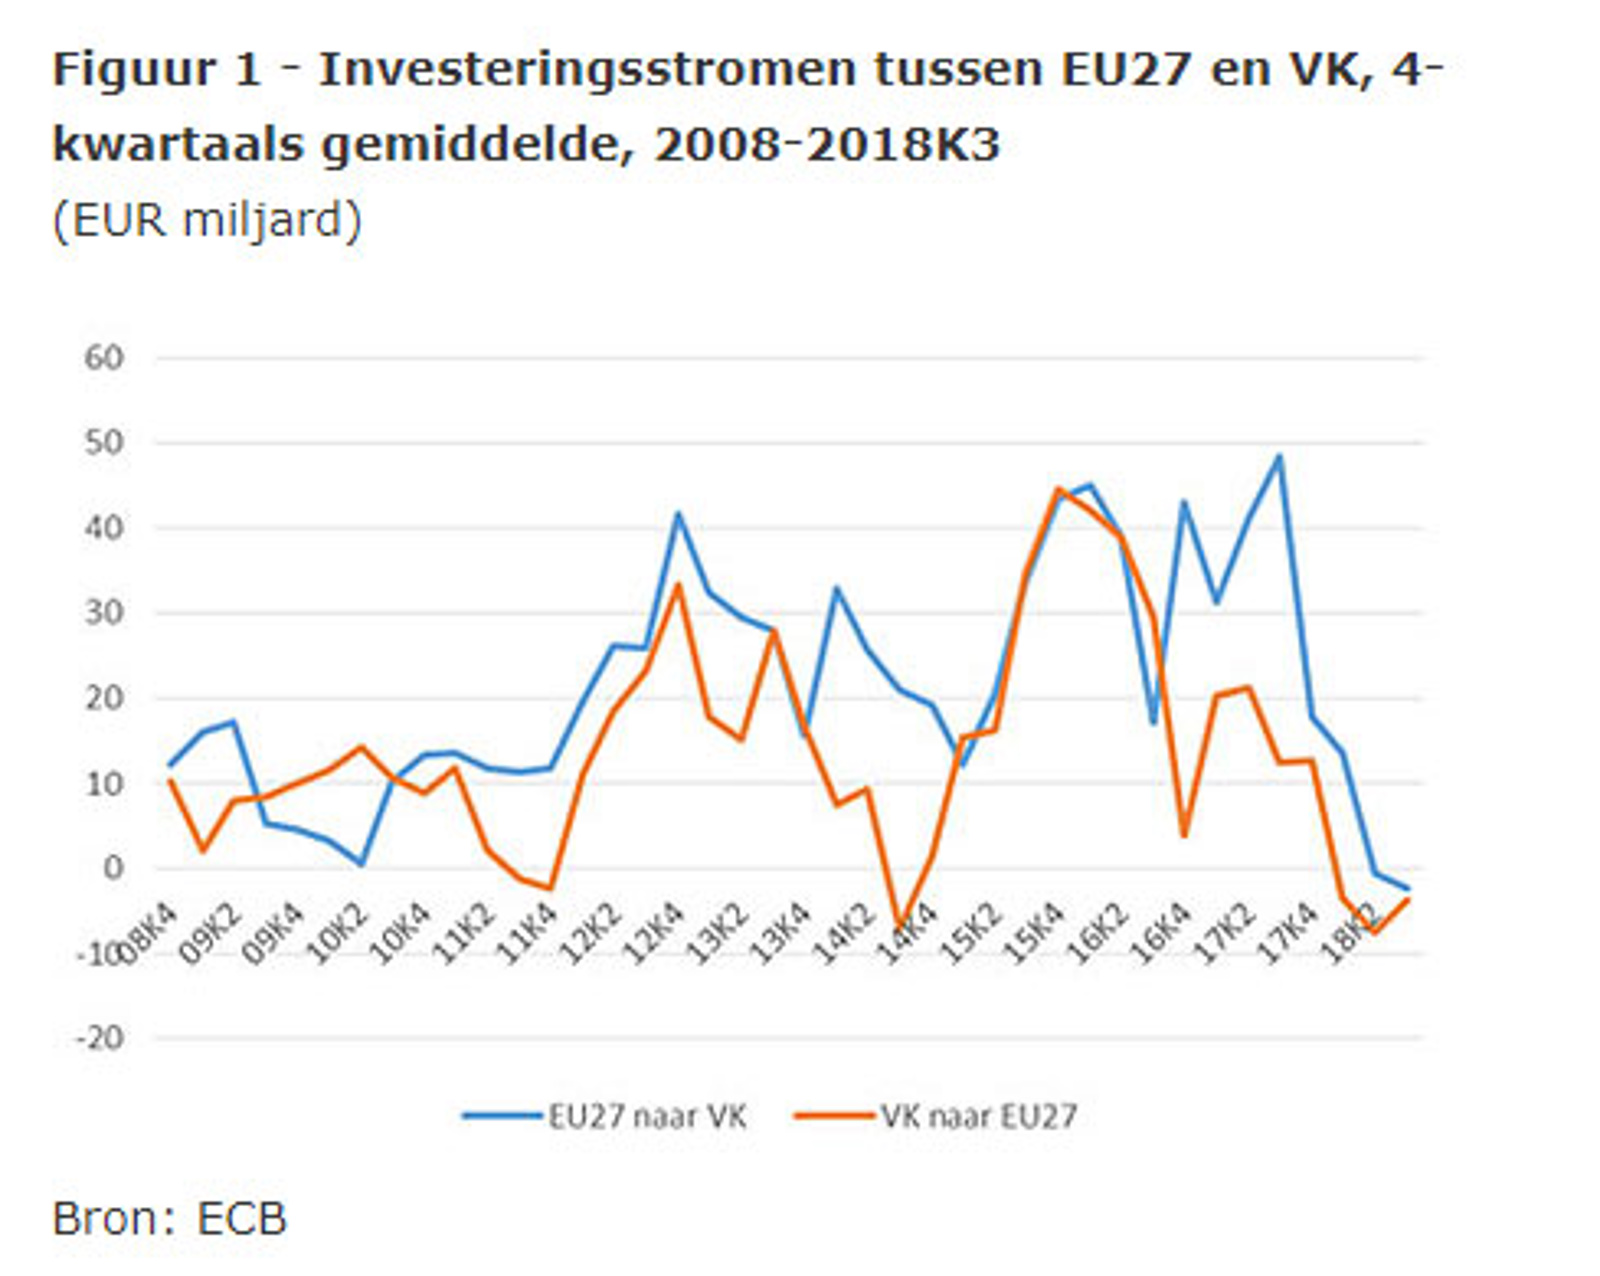 Investeringsstromen tussen EU27 en VK, 4-kwartaals gemiddelde, 2008-2018K3